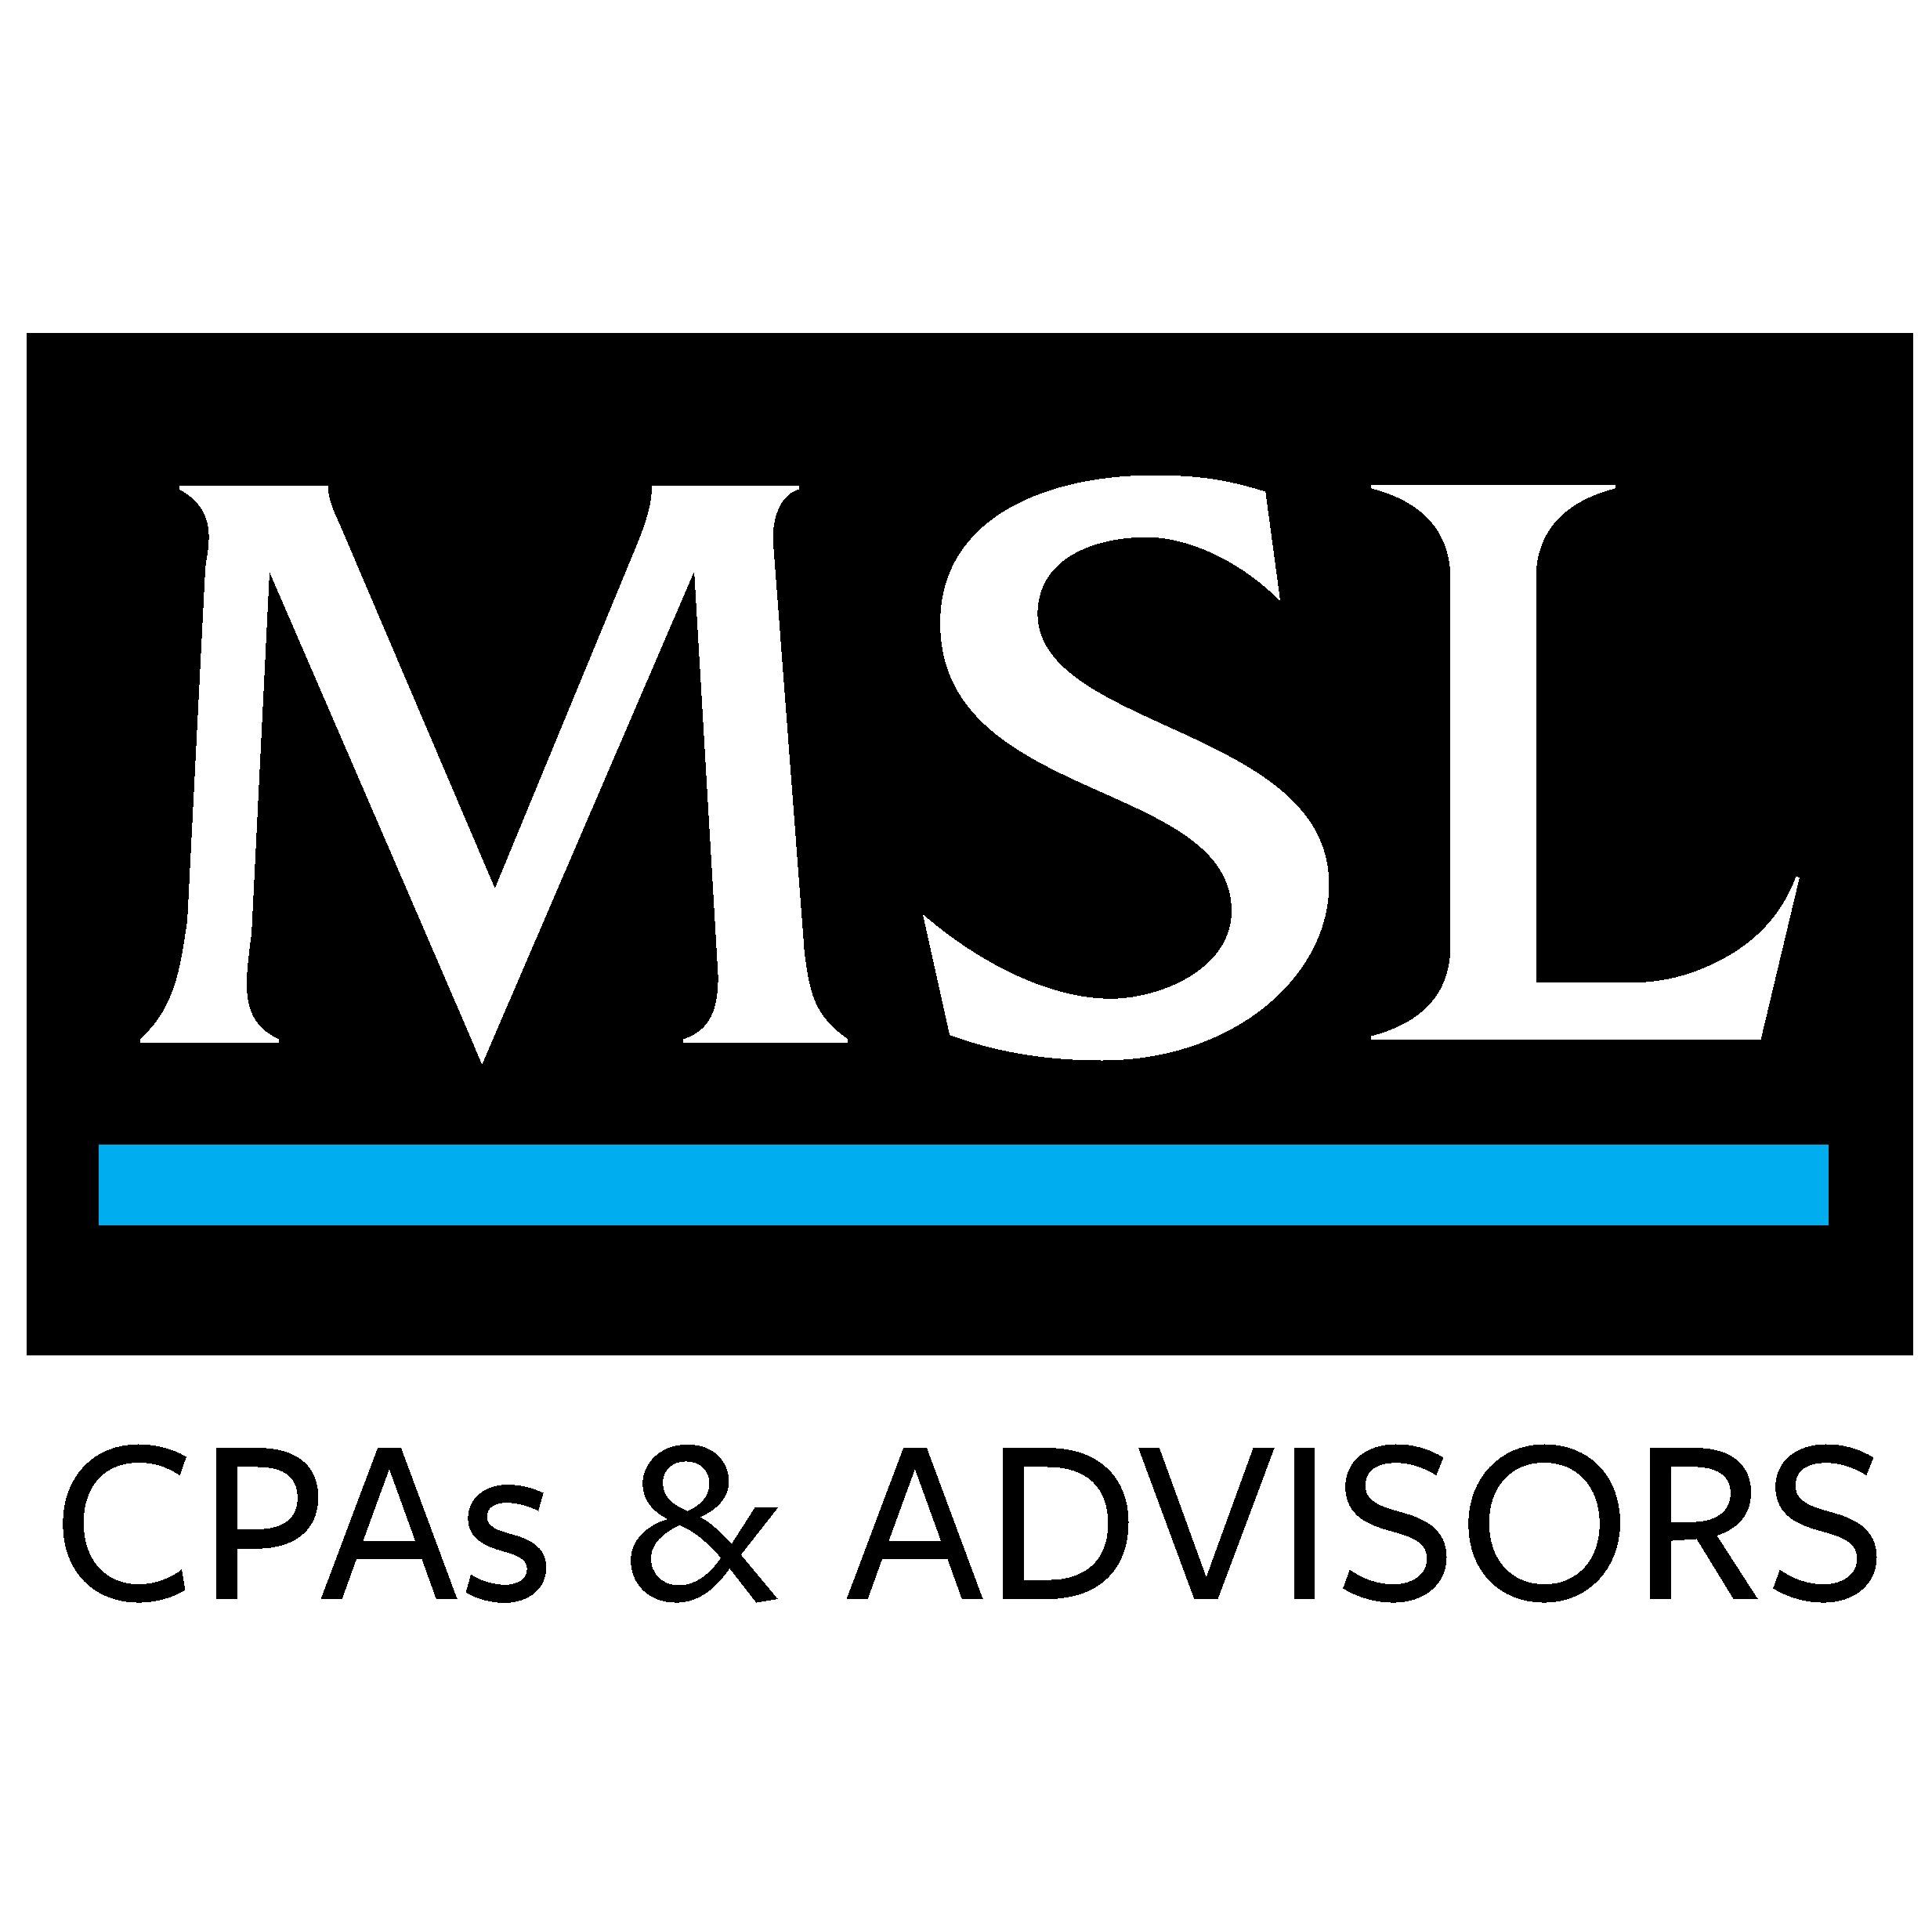 MSL CPAs & Advisors